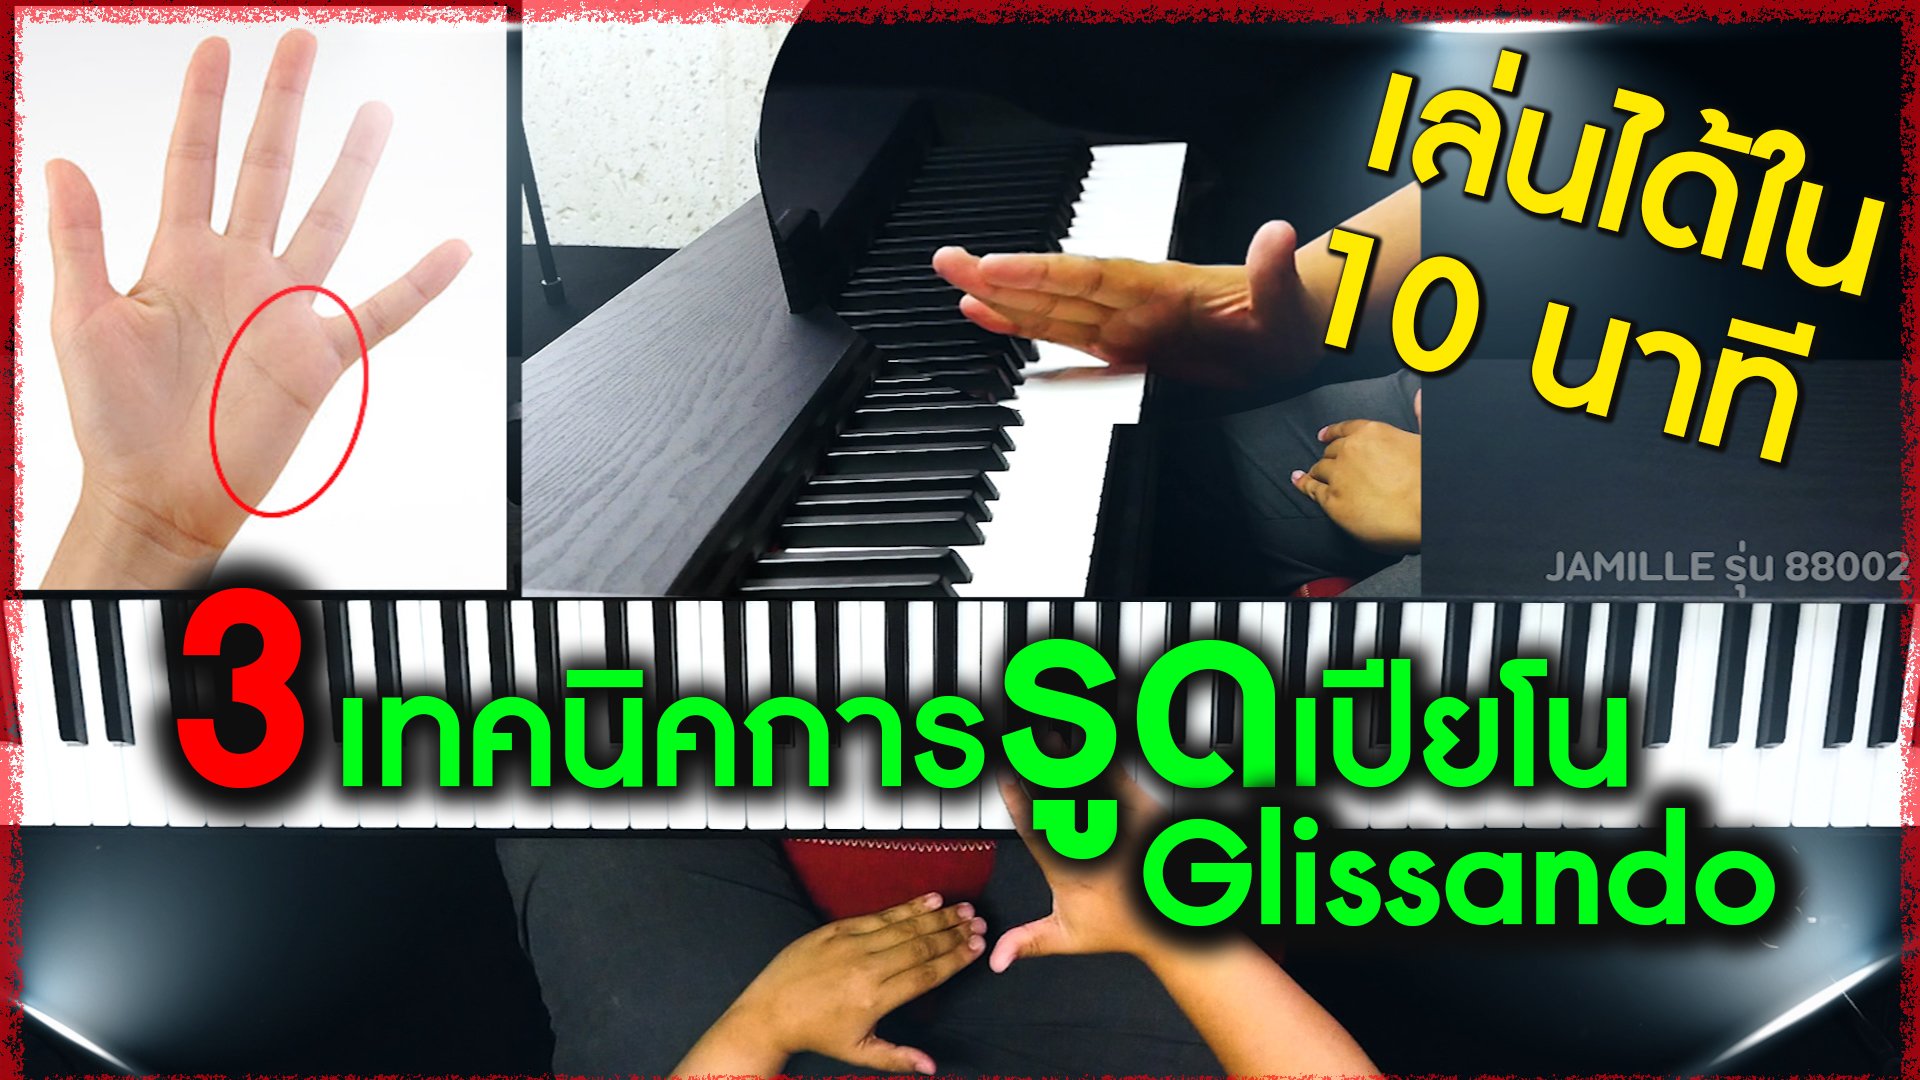 สอนเปียโน&คีย์บอร์ด เทคนิคการรูดเปียโน (Glissando)เข้าใจใน 10 นาที!!!